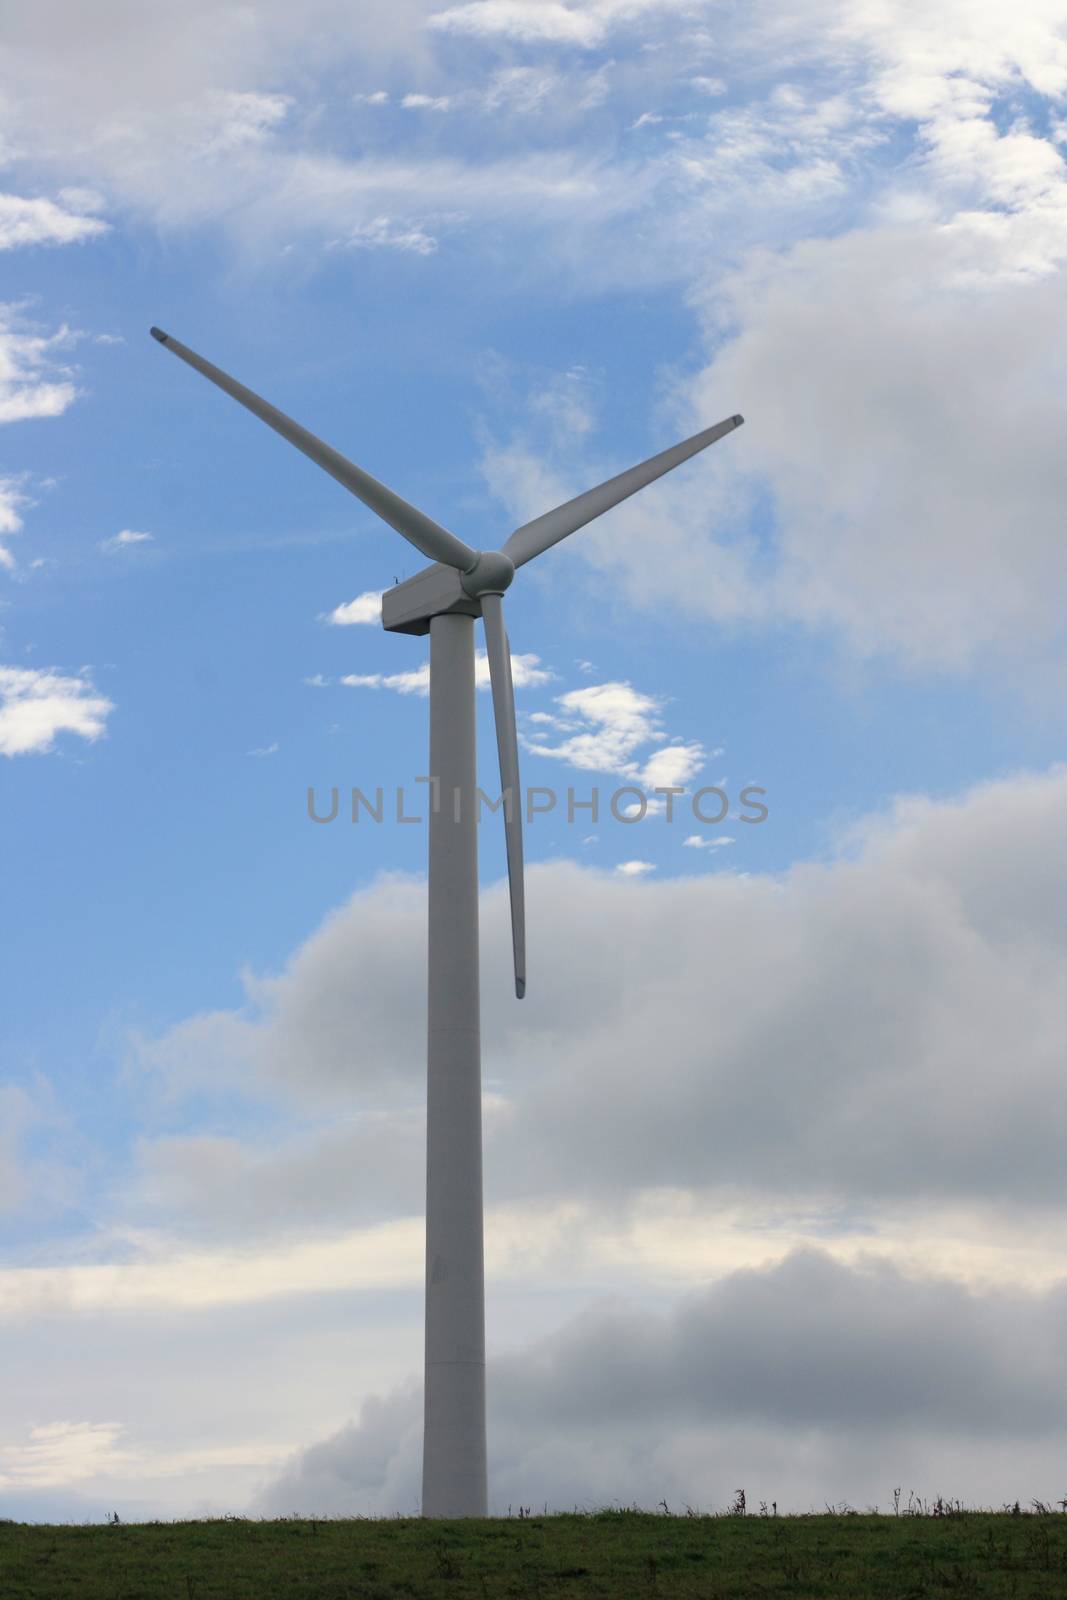 Wind turbine to generate electricity with blue sky in the background  Windrad zur Stromerzeugung mit blauem Himmel im Hintergrund by hadot